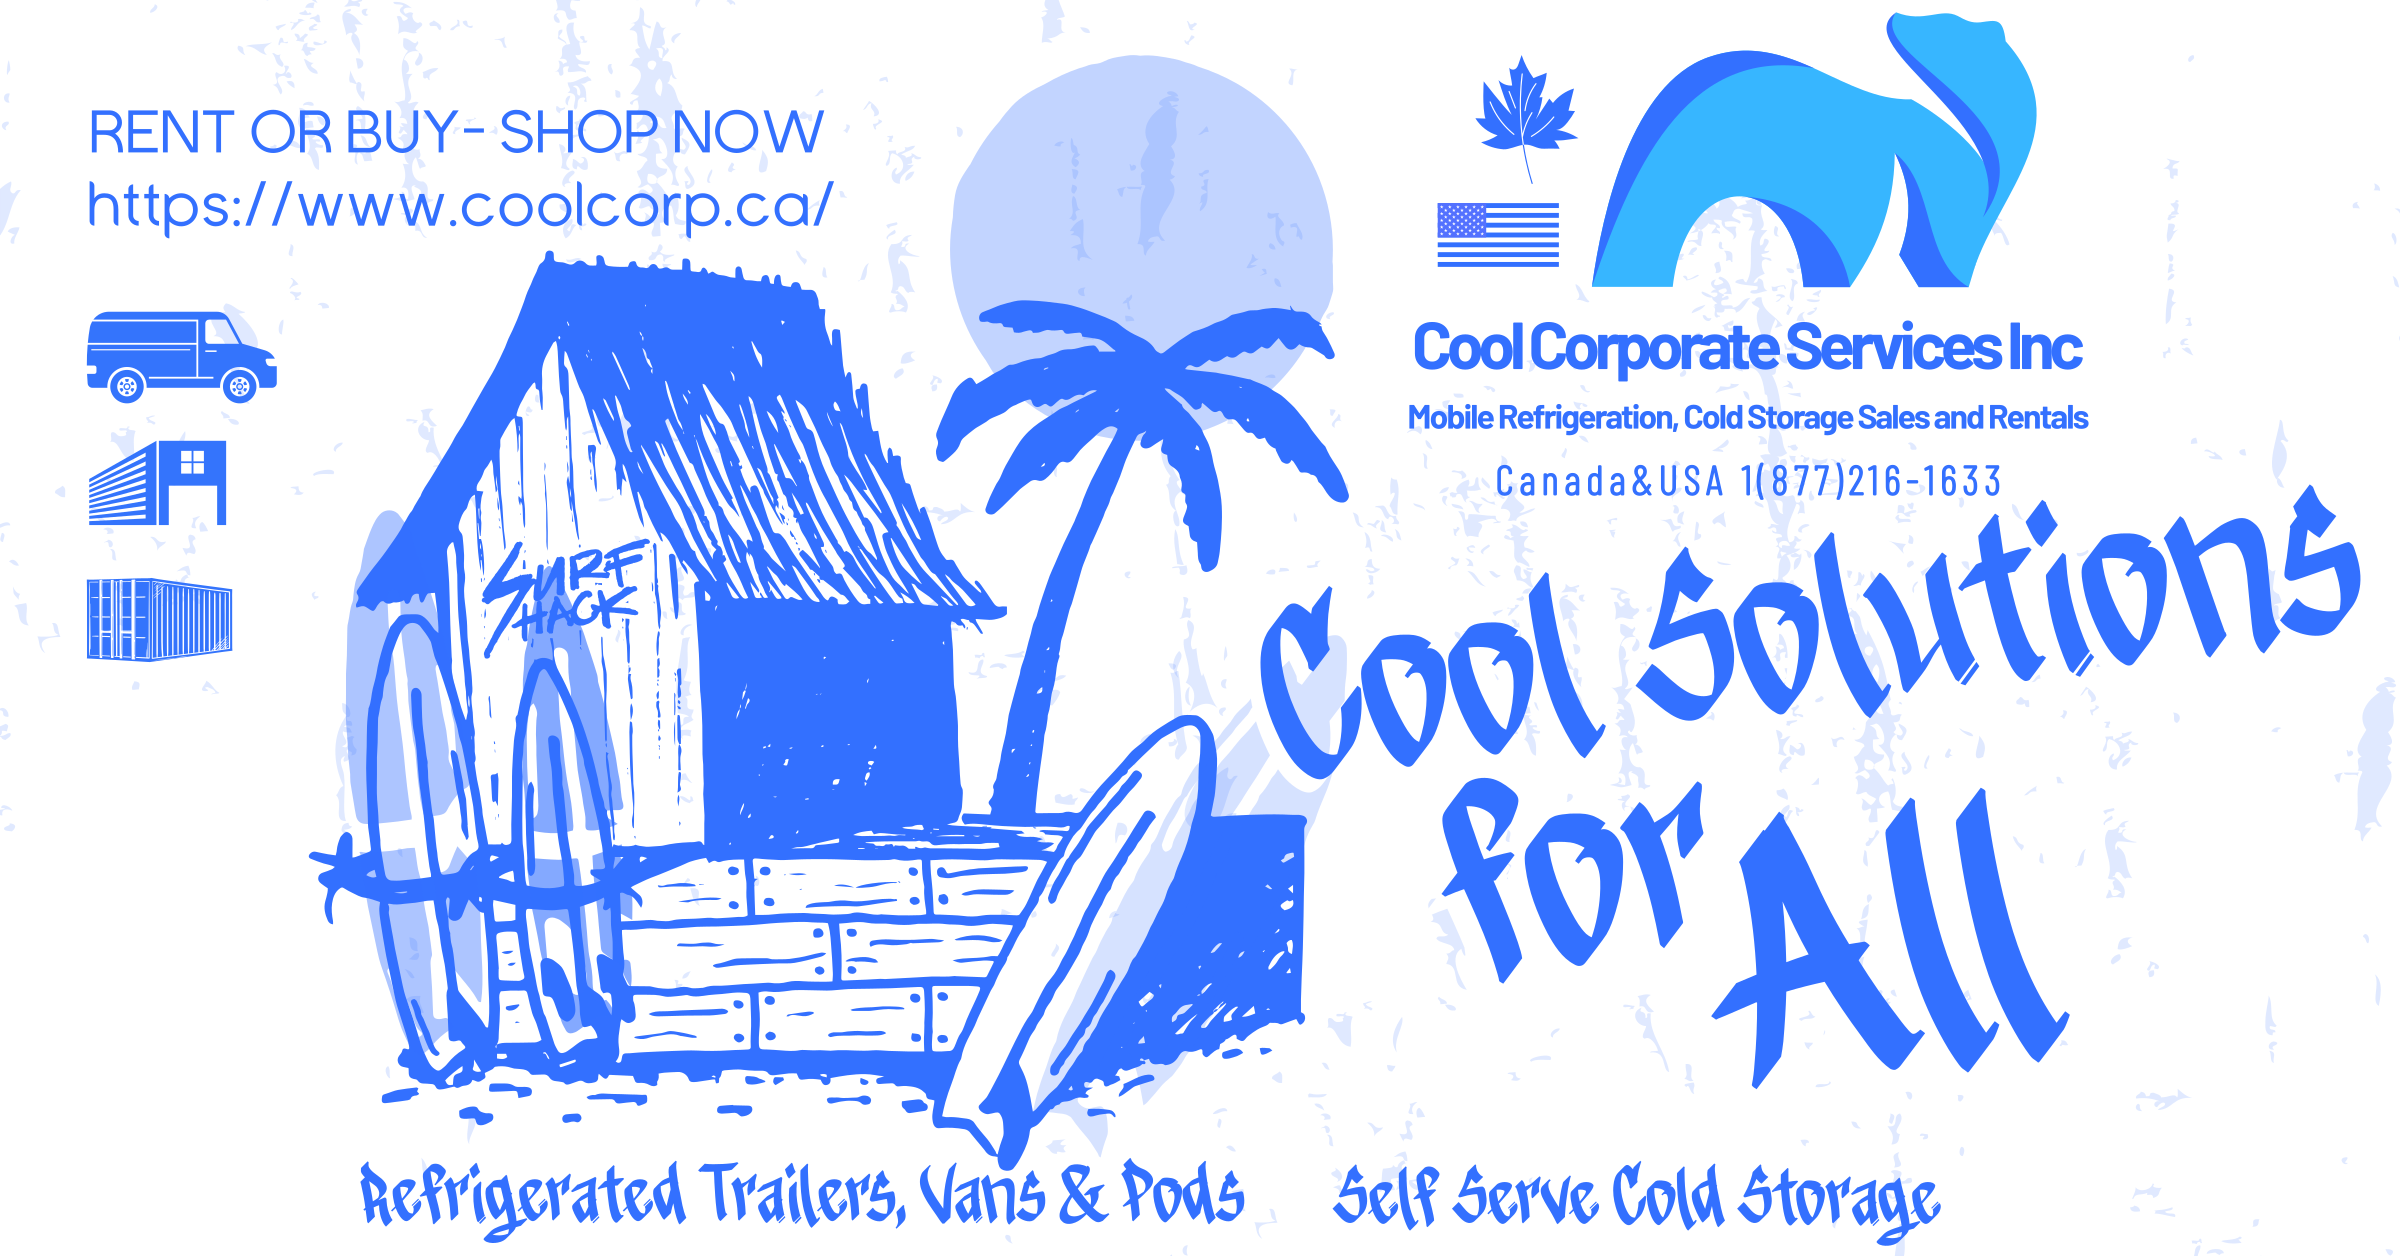 Coolertrailers.ca Rentals